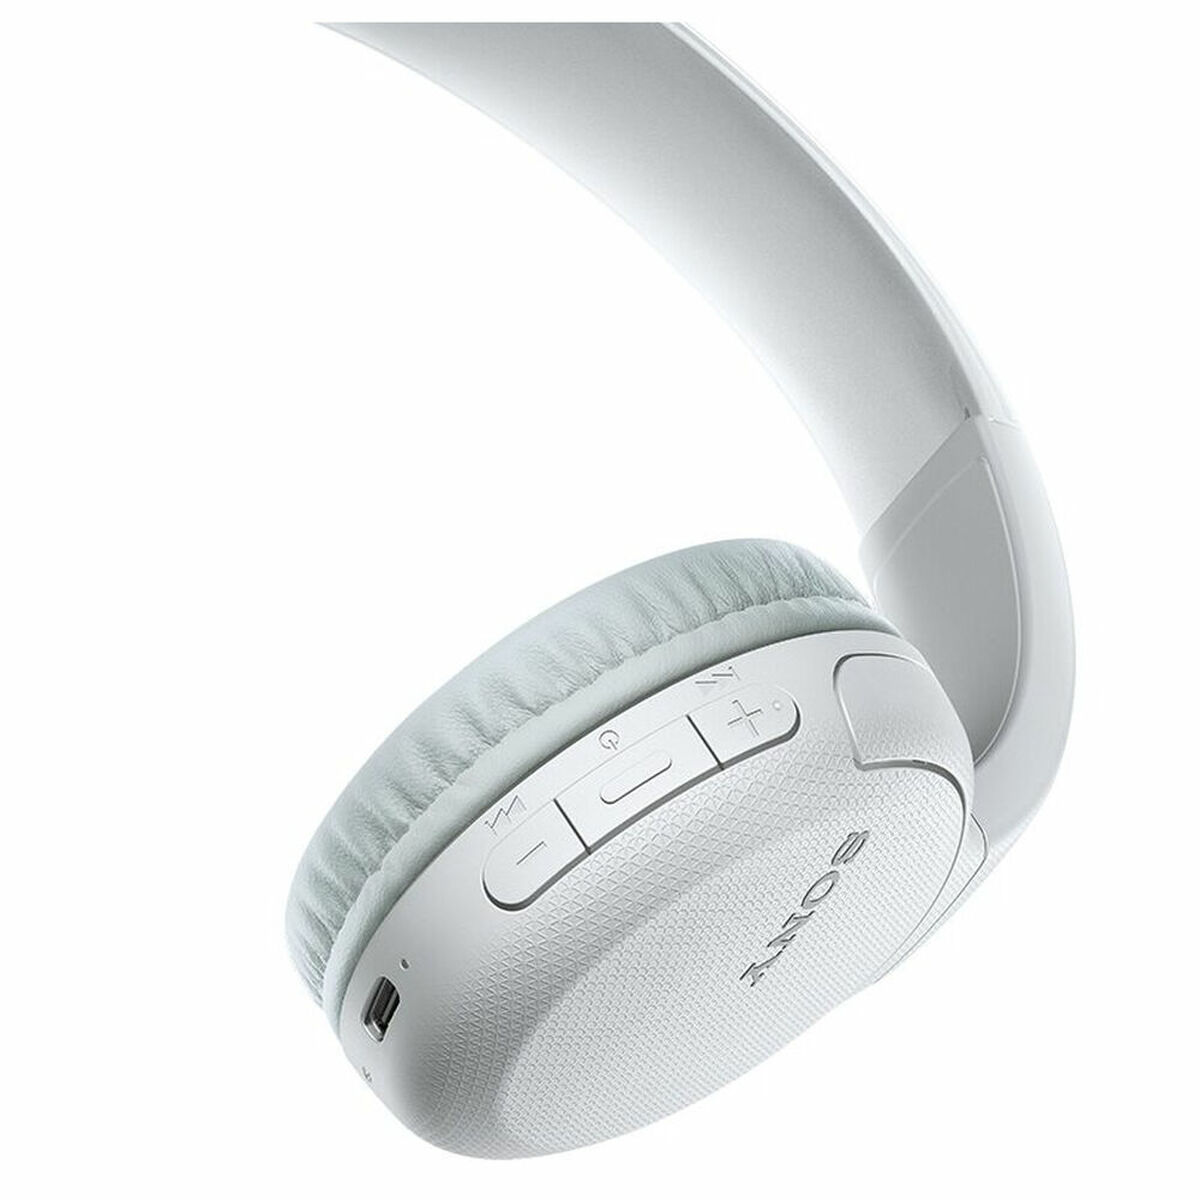 SONY WH-CH510, On-ear weiß Bluetooth Kopfhörer